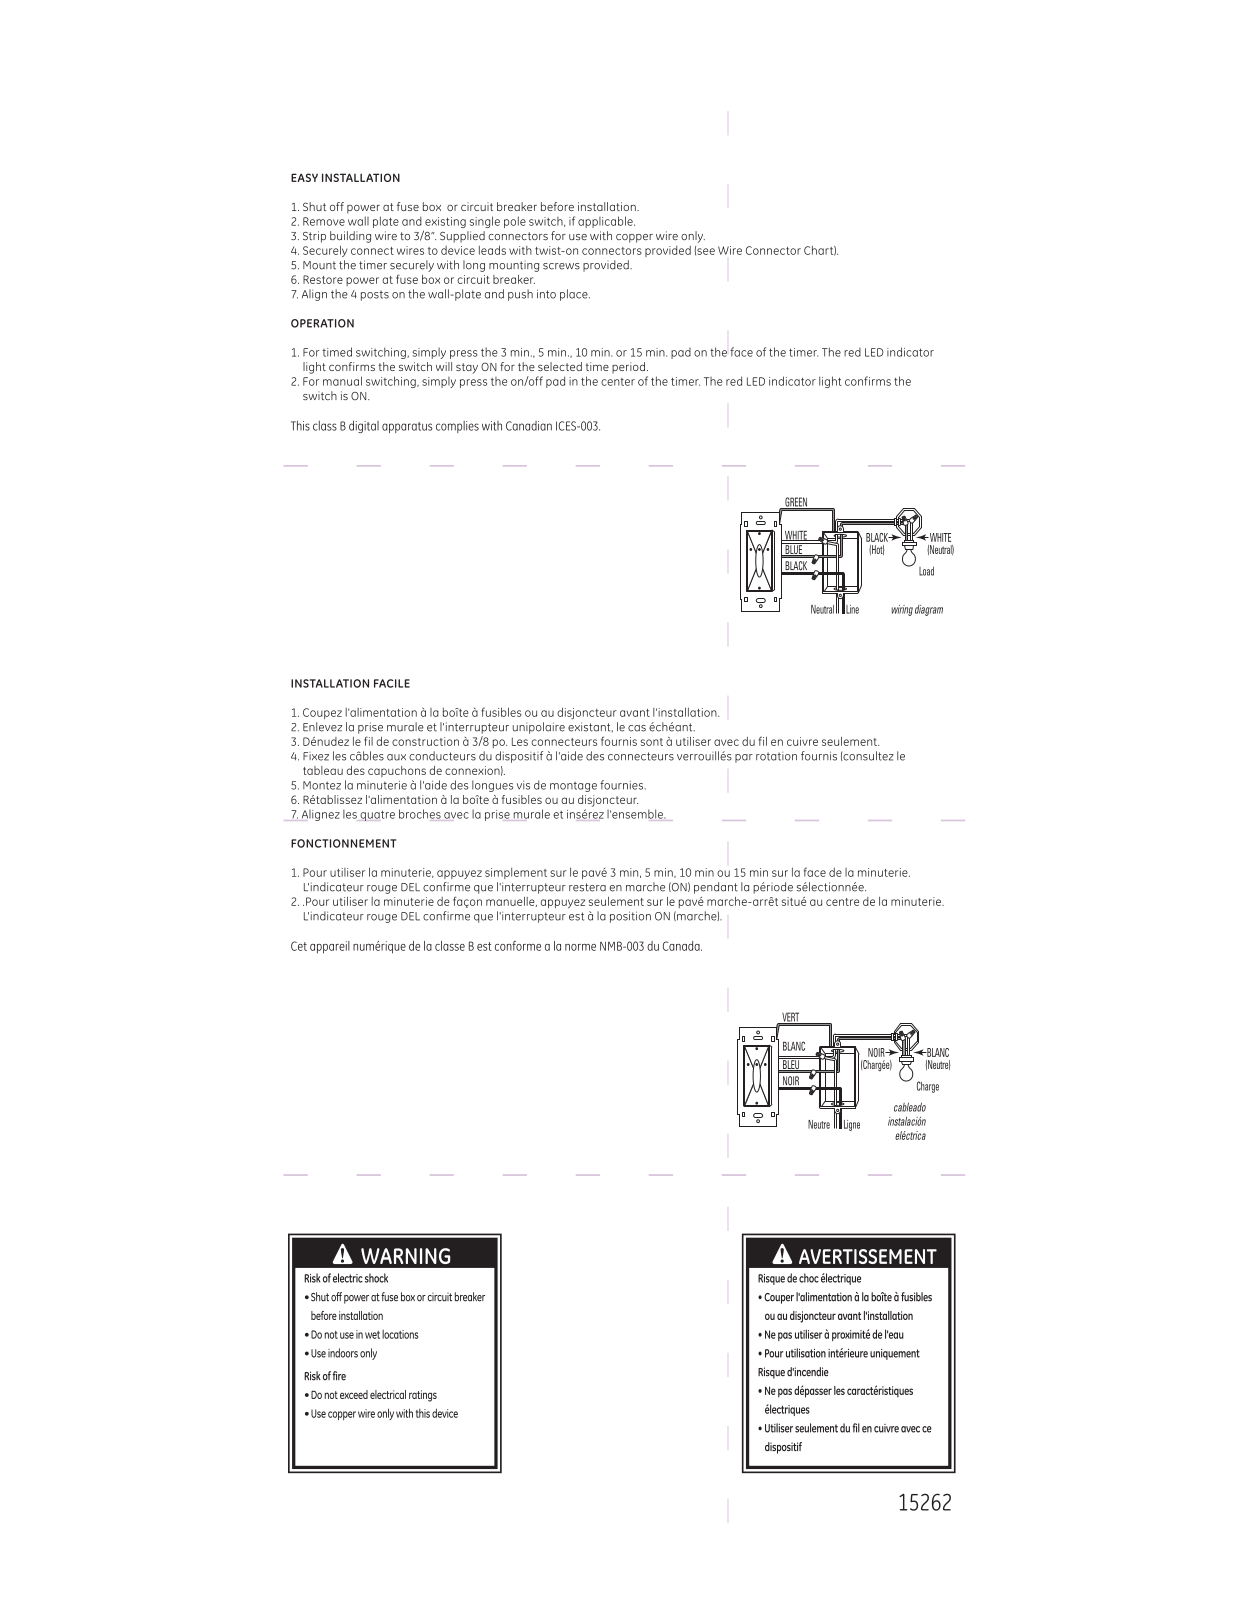 GE 15262 Owner's Manual